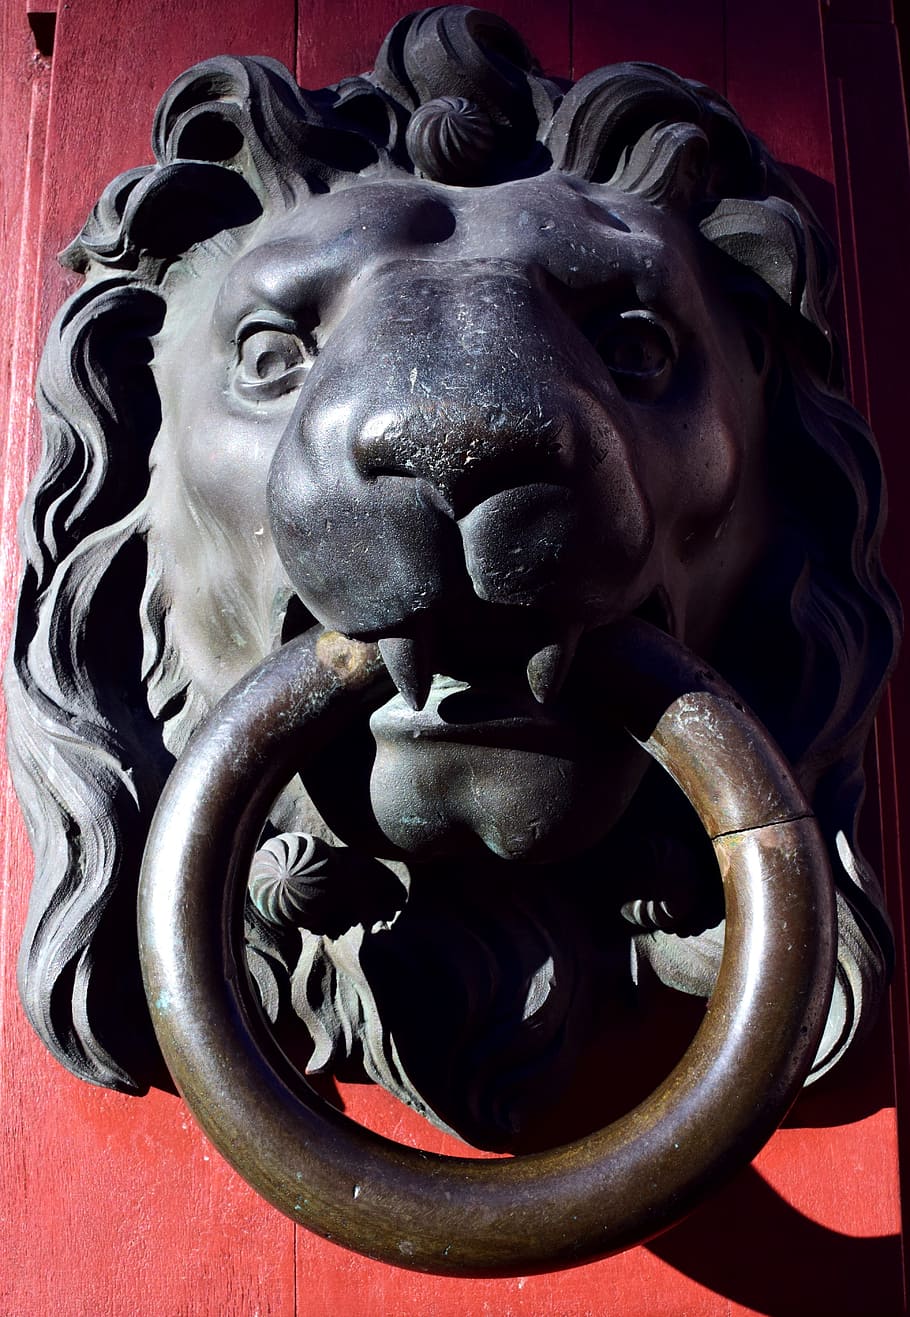 thumper, lion head, doorknocker, input, old, metal, handle, door, ring, lion